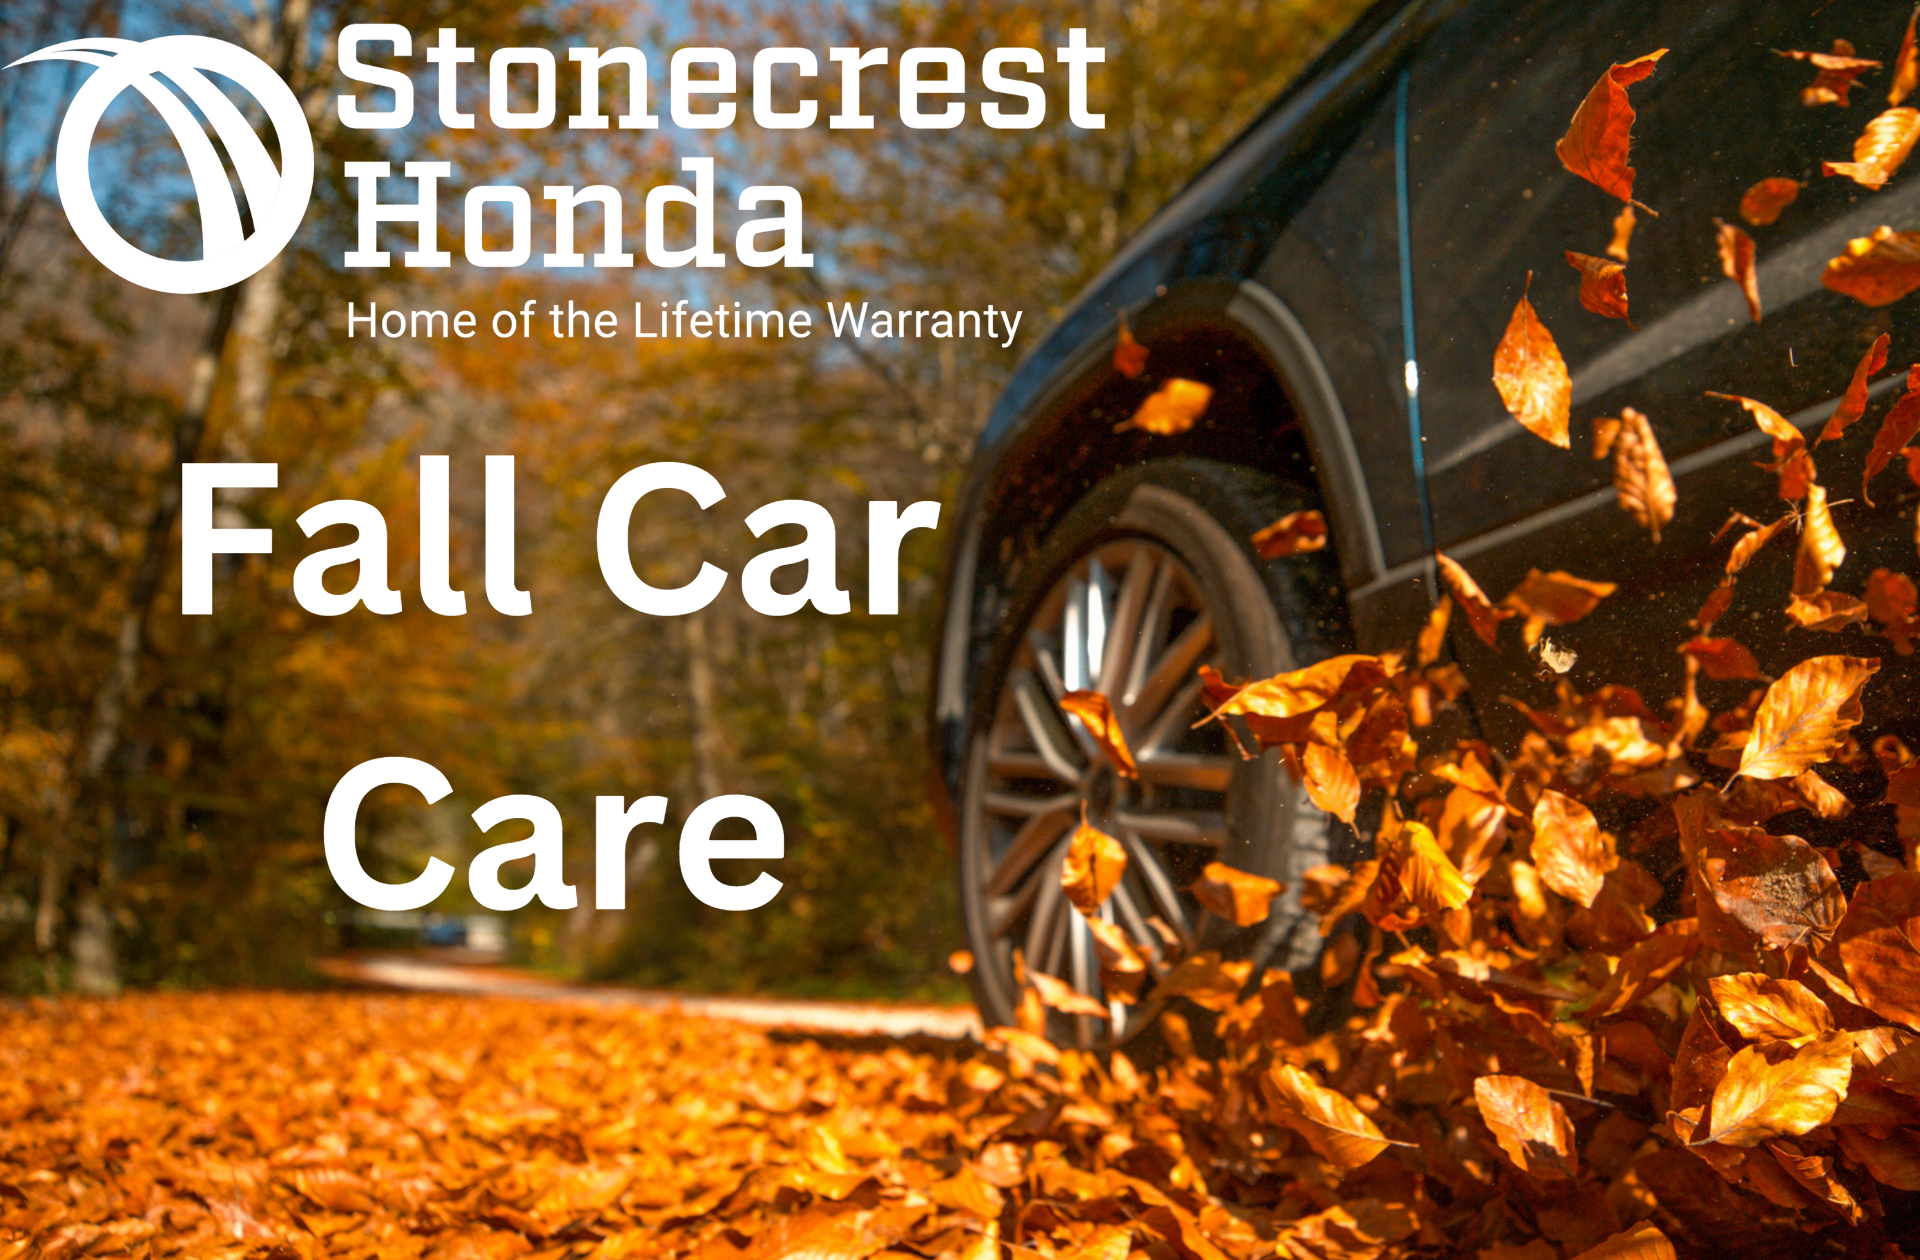 Fall Car Care Month Stonecrest Honda